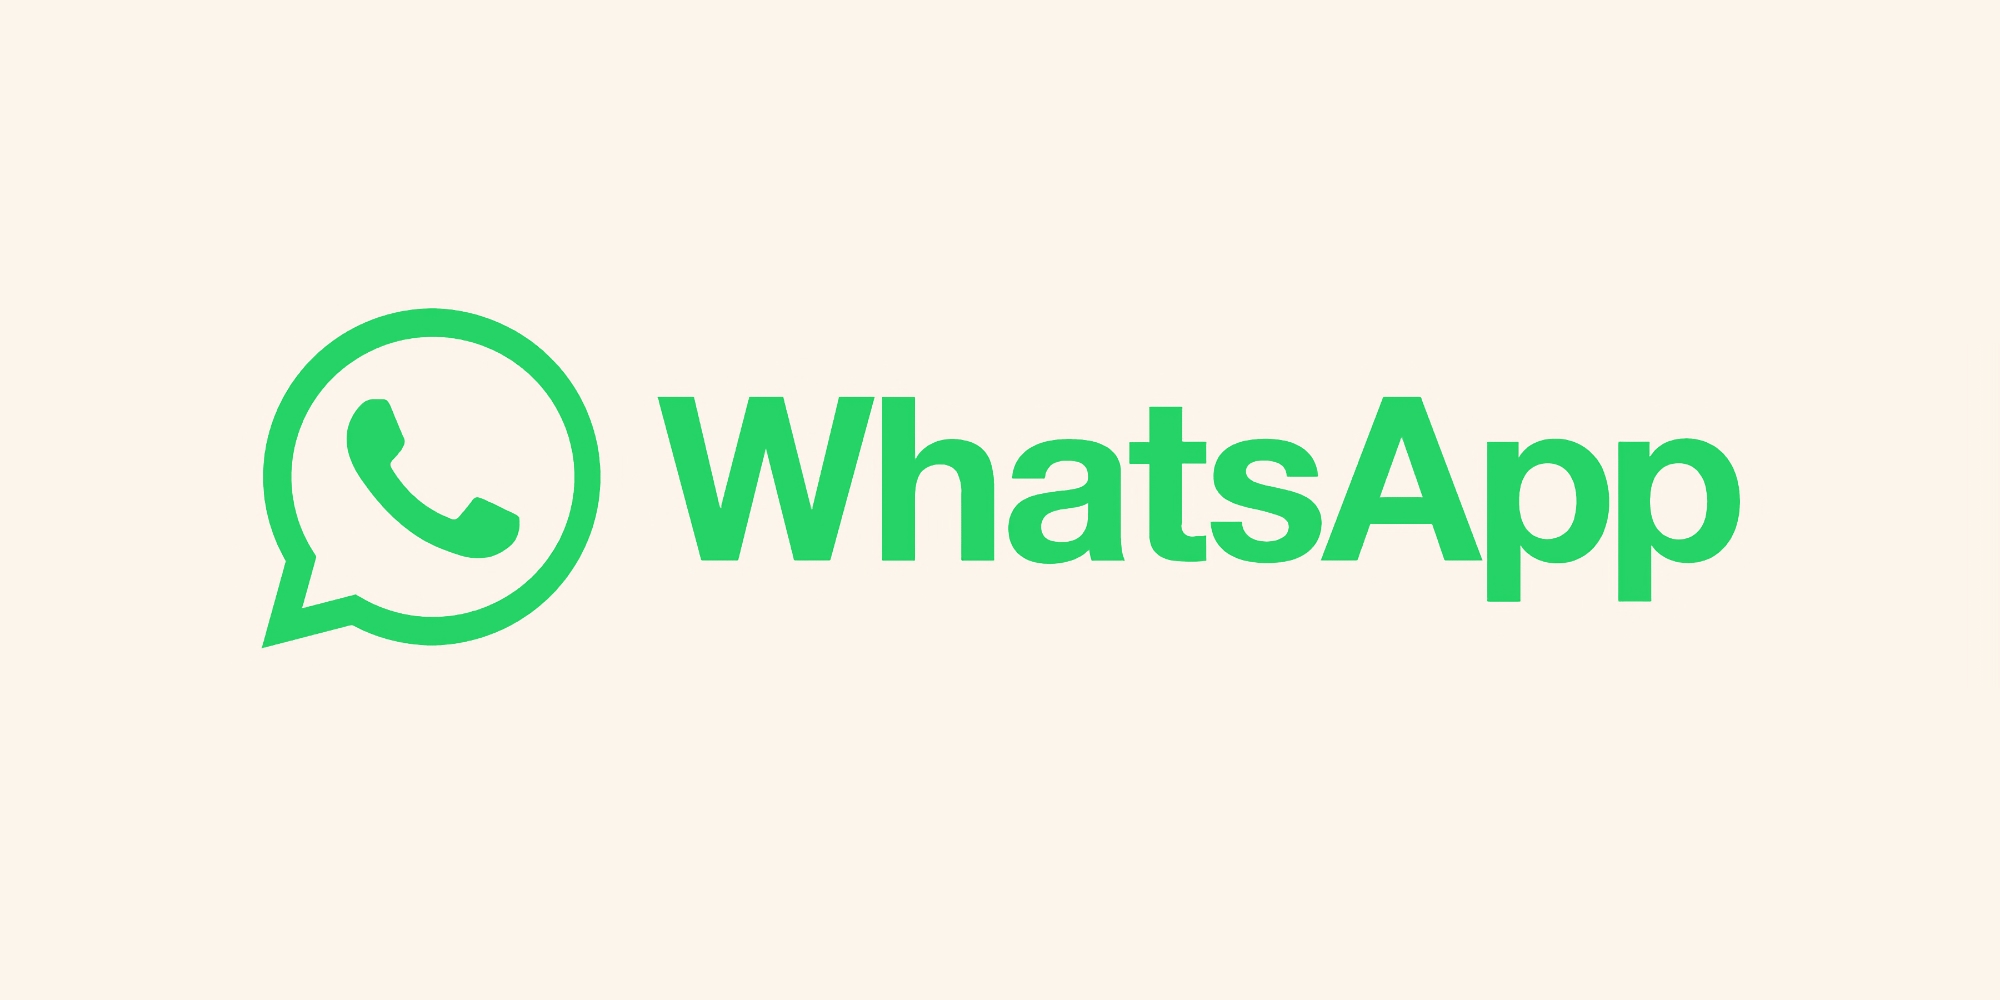 WhatsApp til iPhone har nu mulighed for at sende fotos og videoer i deres originale kvalitet